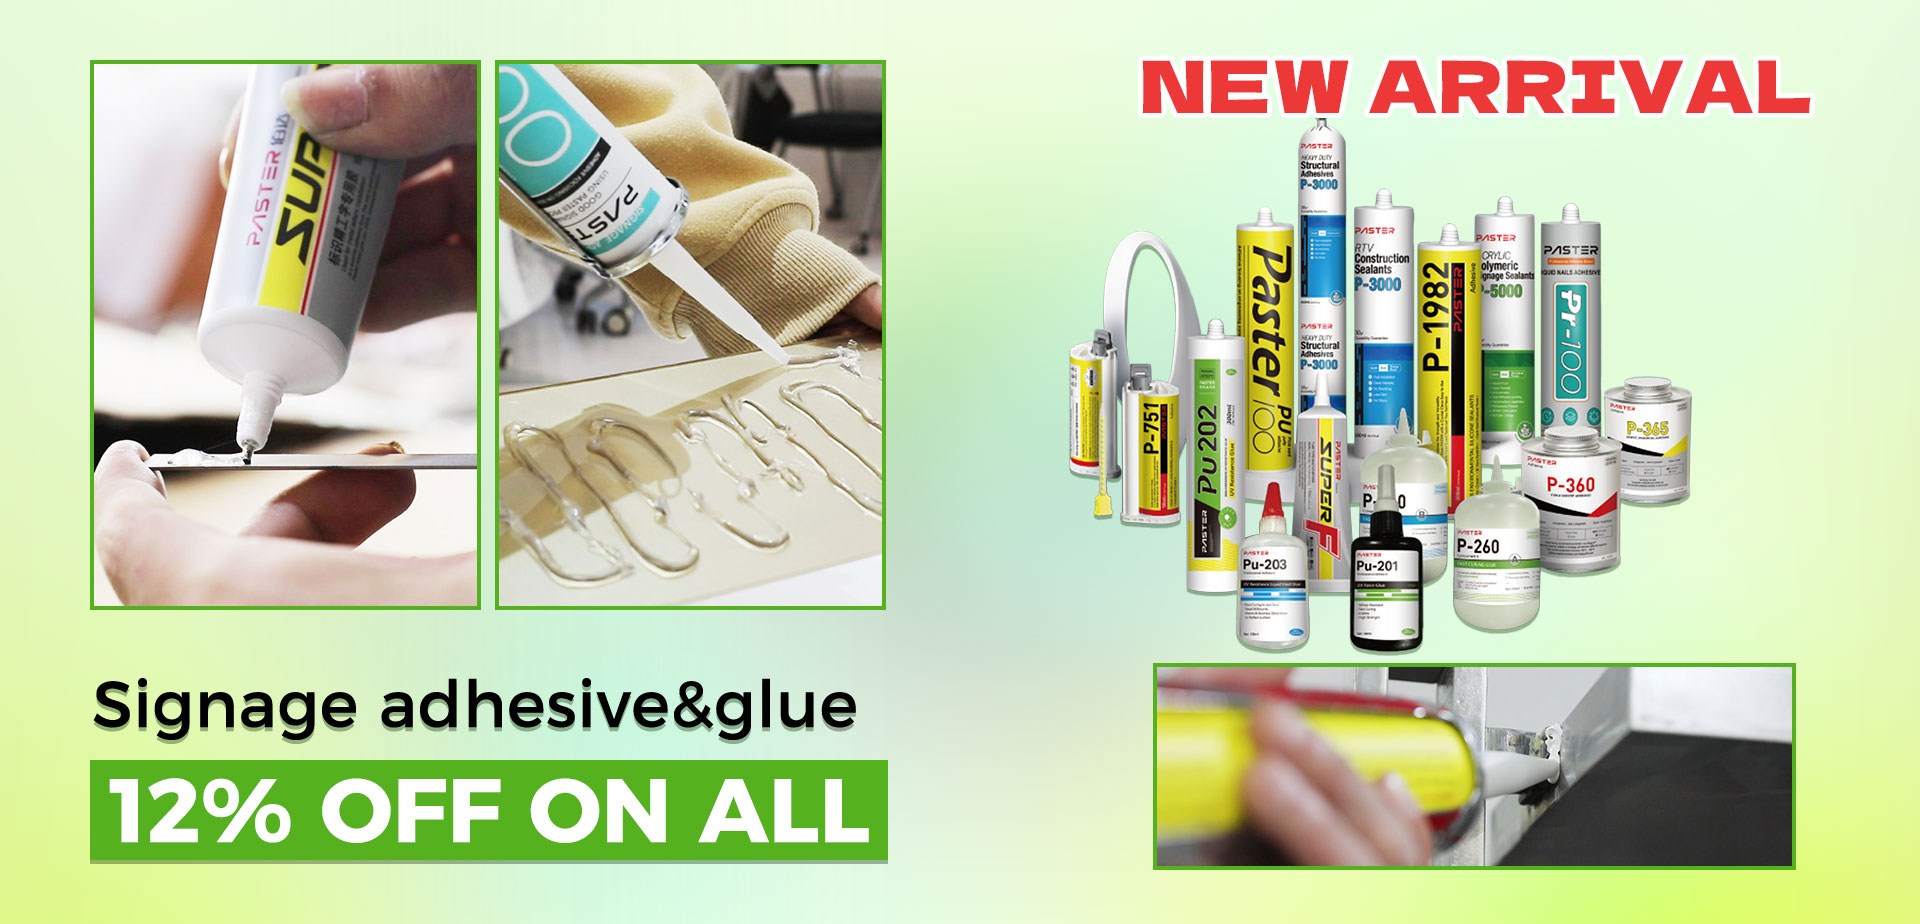 Signage adhesive&glue